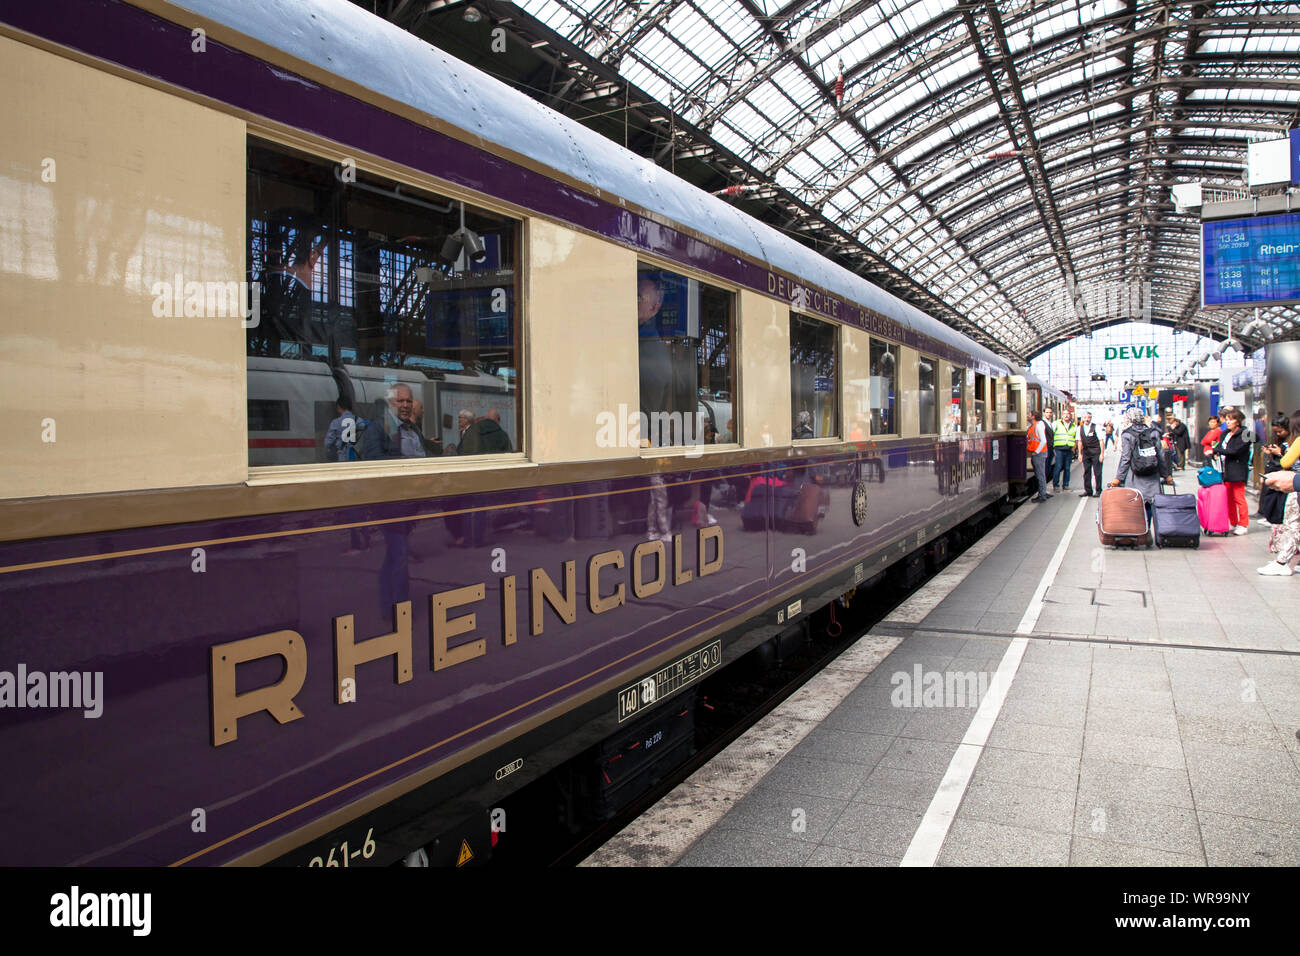 Historische Rheingold Zug im Hauptbahnhof, Köln, Deutschland historischer Rheingold Zug im Hauptbahnhof, Köln, Deutschland. Stockfoto